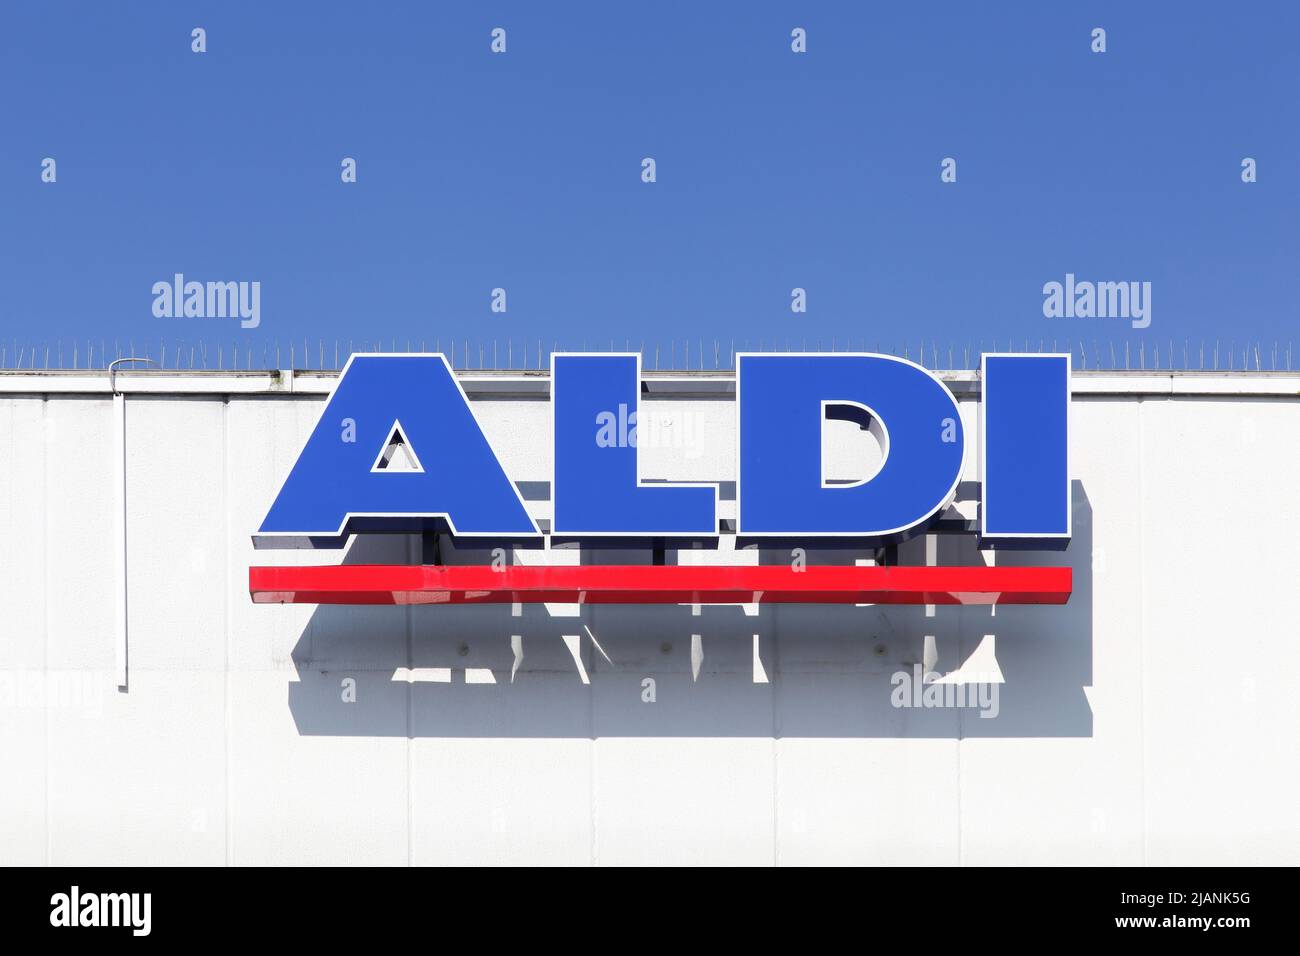 Flensburg, Deutschland - 4. Juni 2016: Aldi-Schild an einer Wand. Aldi ist eine weltweit führende Discounter-Supermarktkette mit über 9 000 Geschäften in 18 Ländern Stockfoto